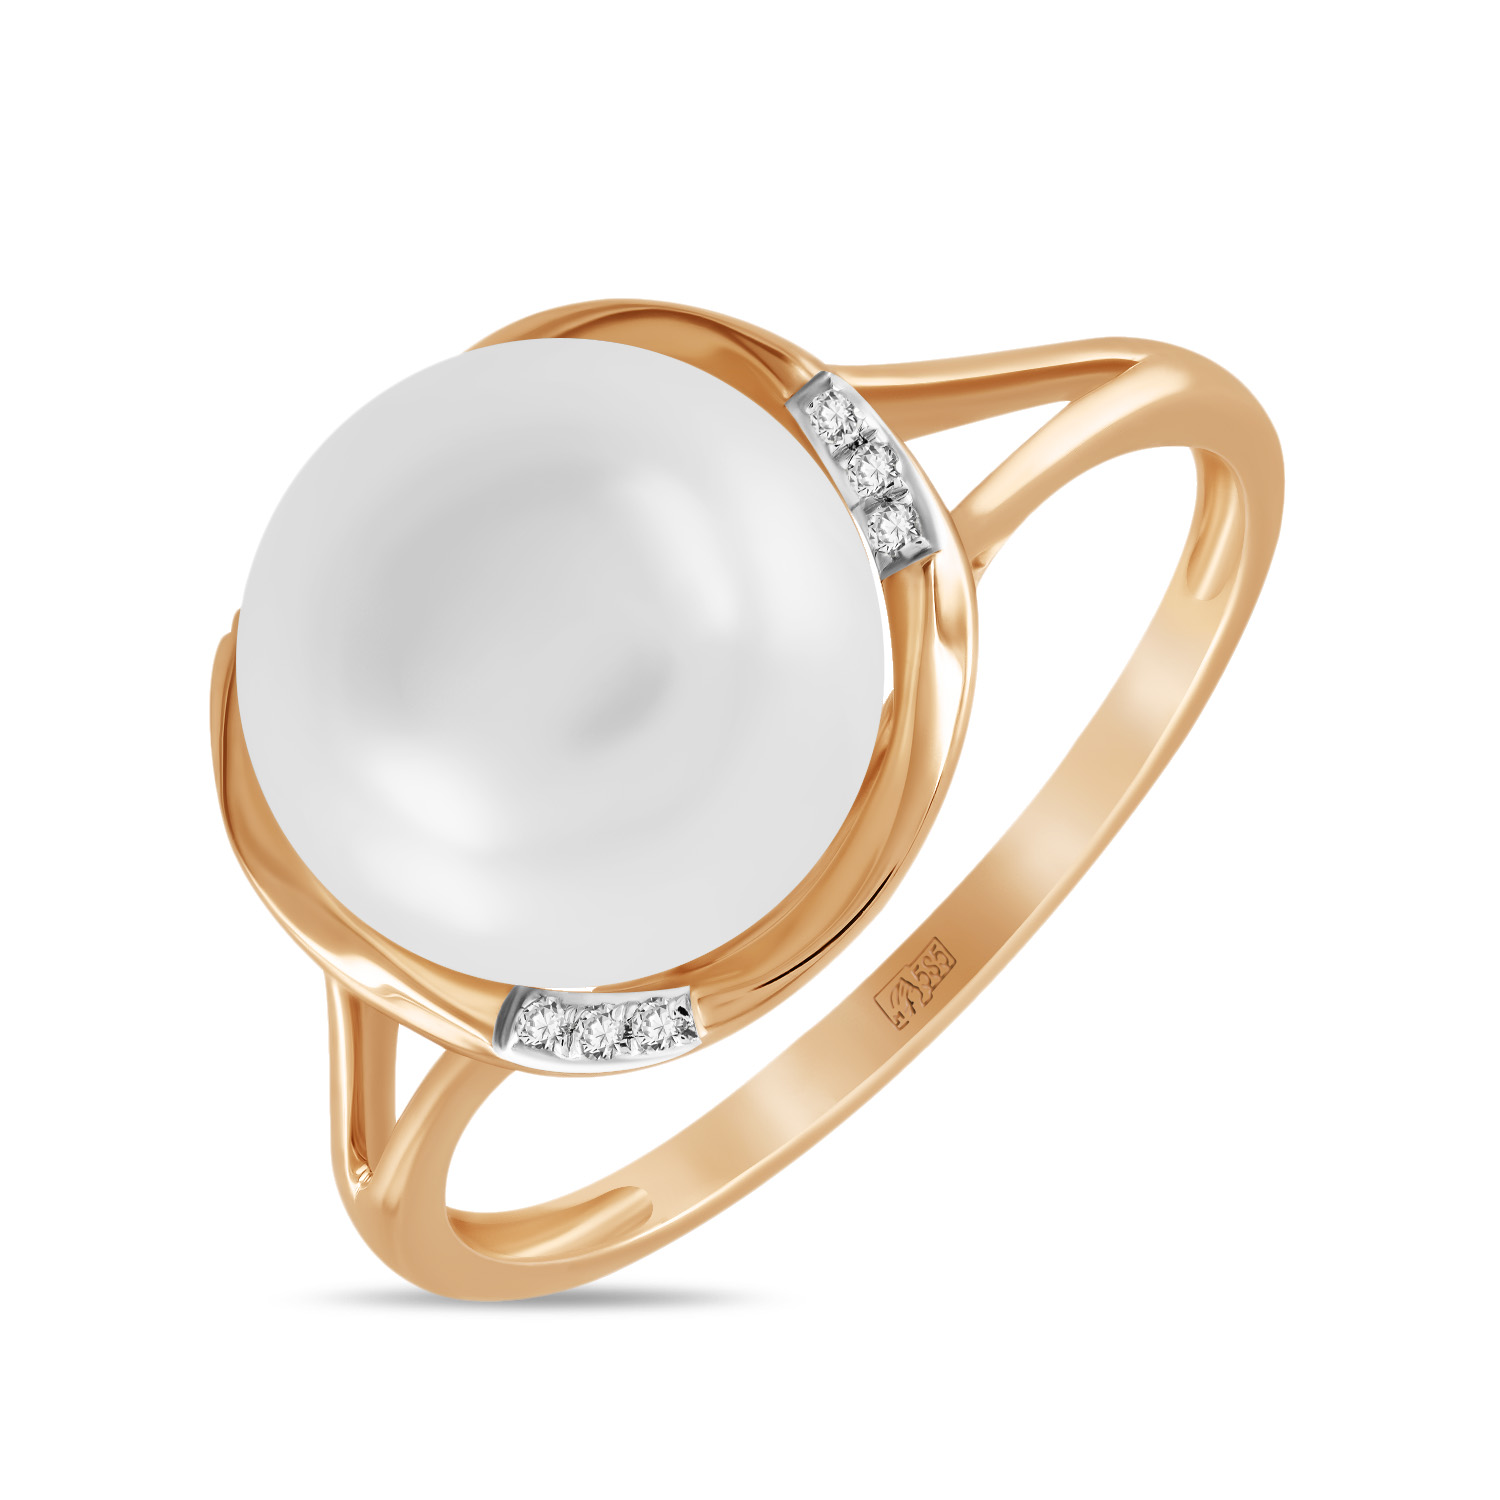 Кольца МЮЗ Золотое кольцо с бриллиантами и жемчугом